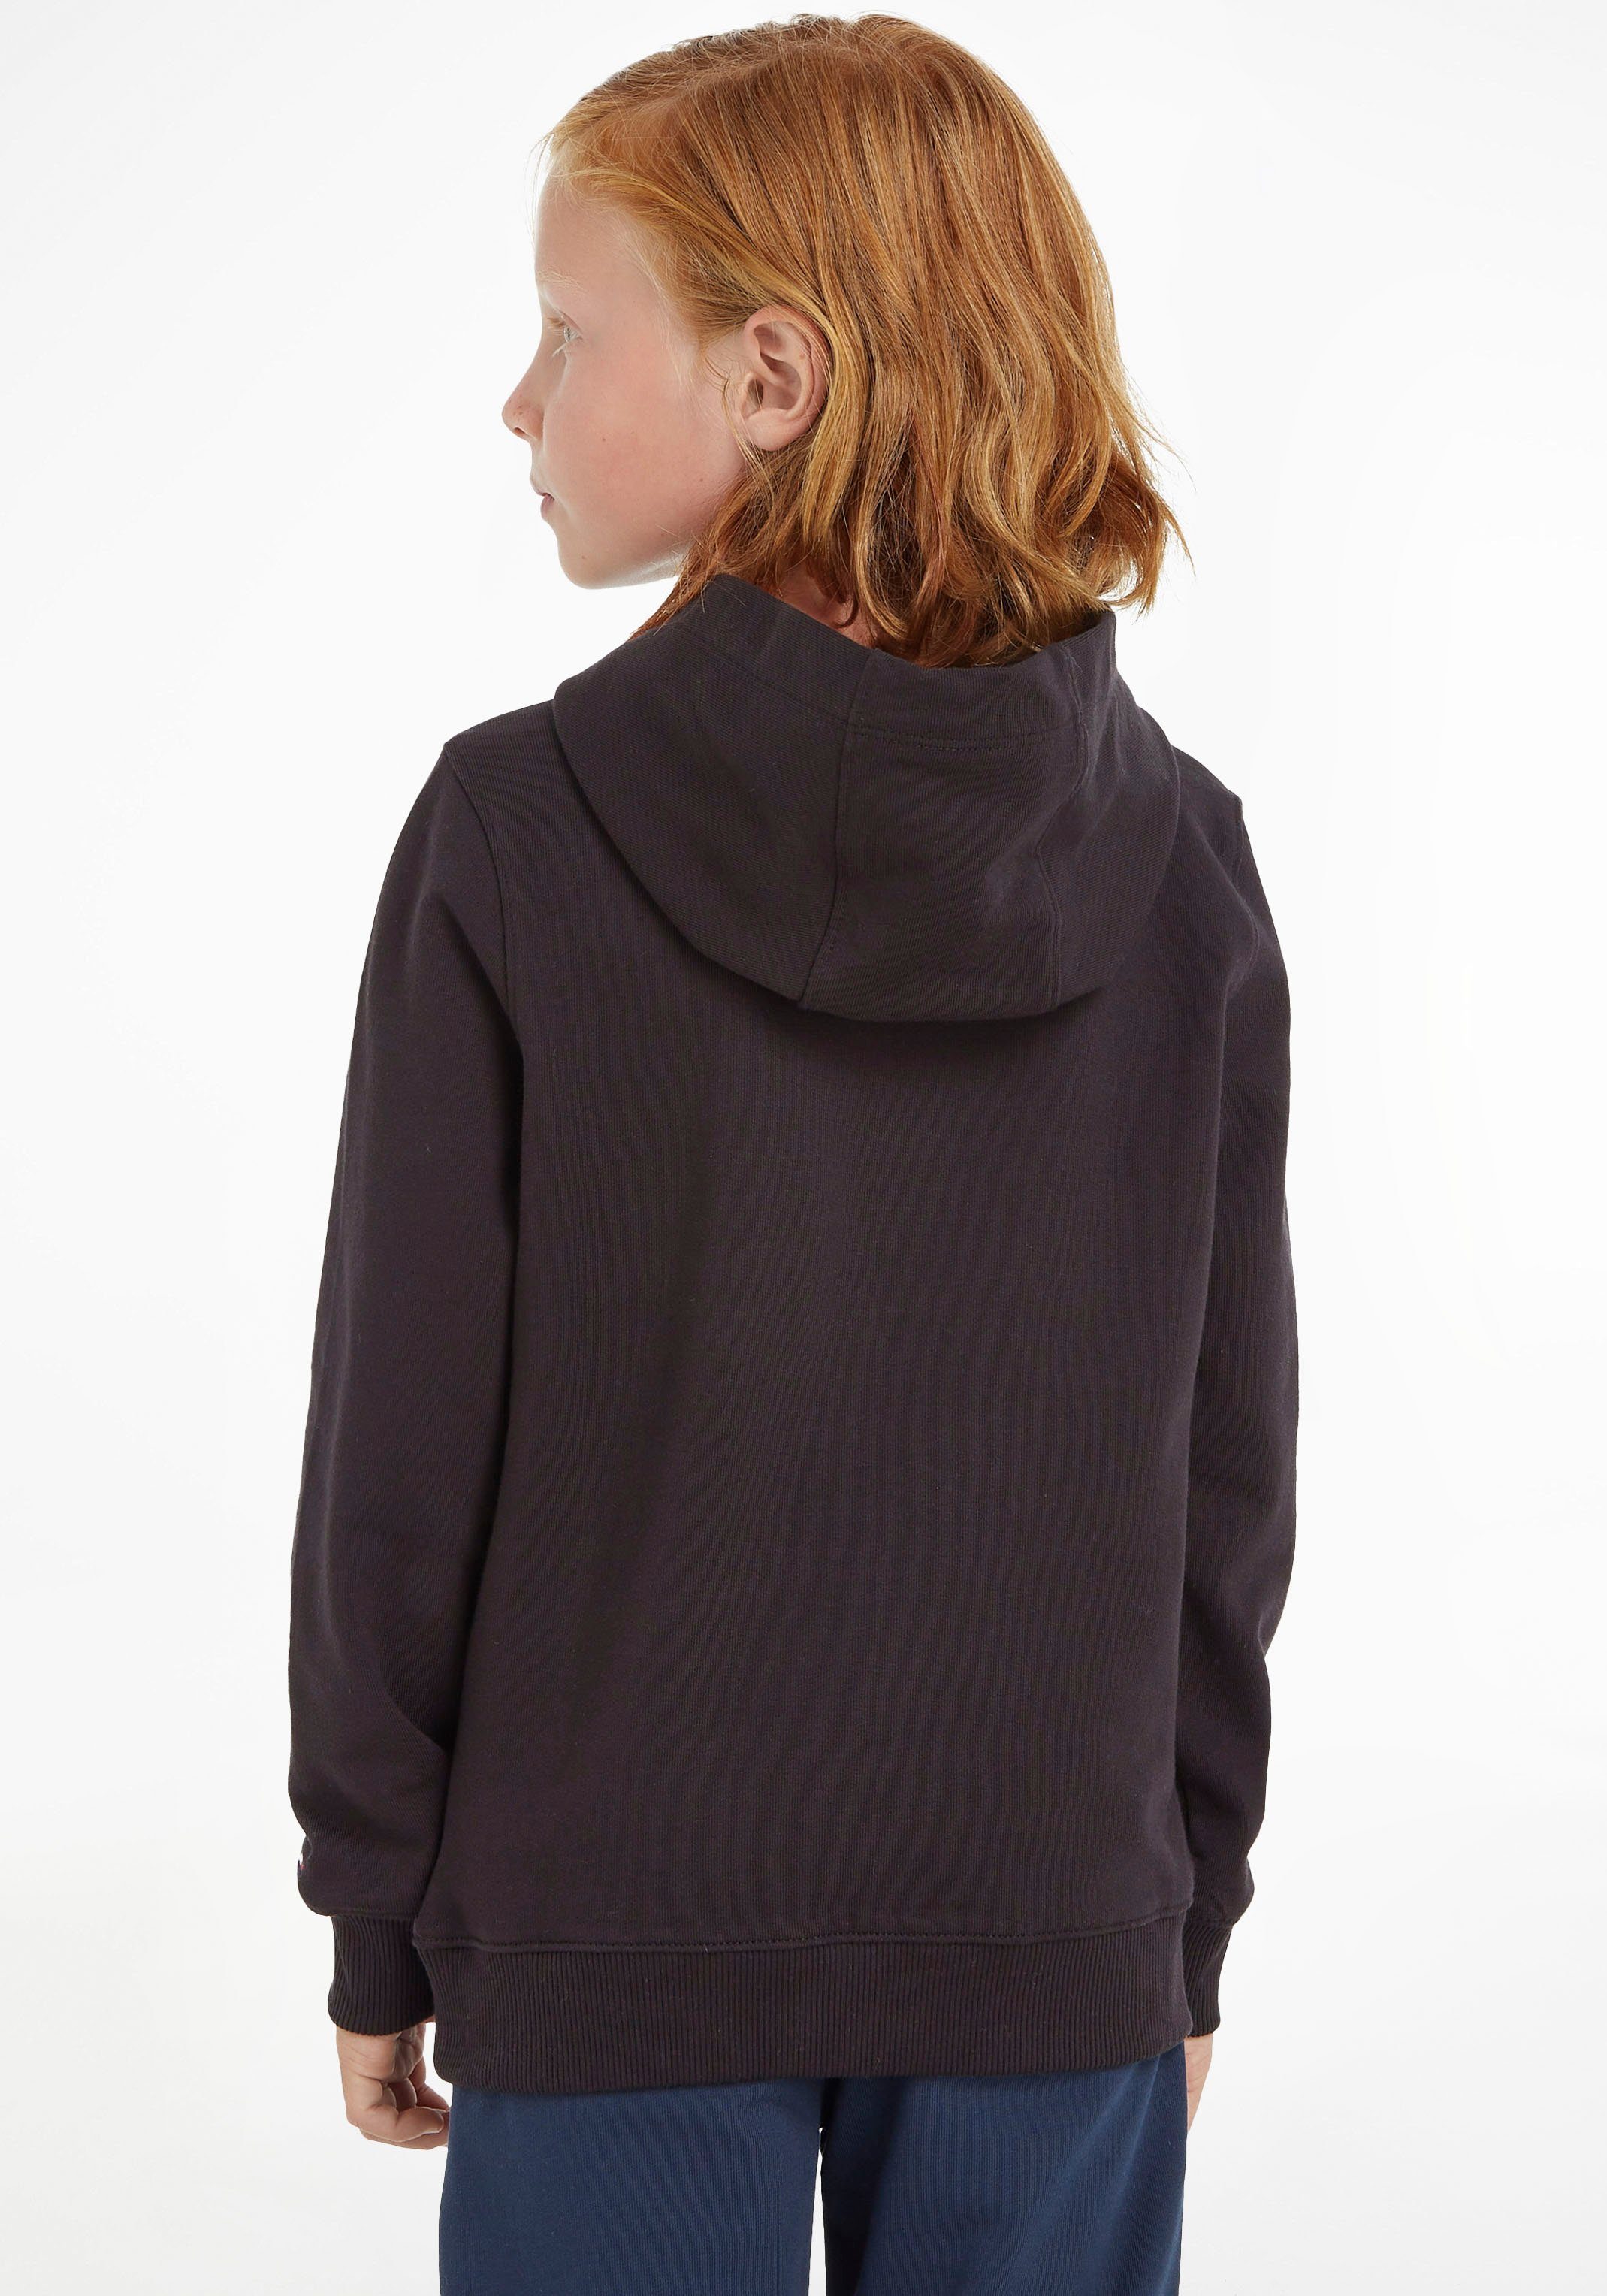 Kapuzensweatshirt ESSENTIAL Junior MiniMe,für Jungen und Hilfiger Mädchen Kids Tommy HOODIE Kinder